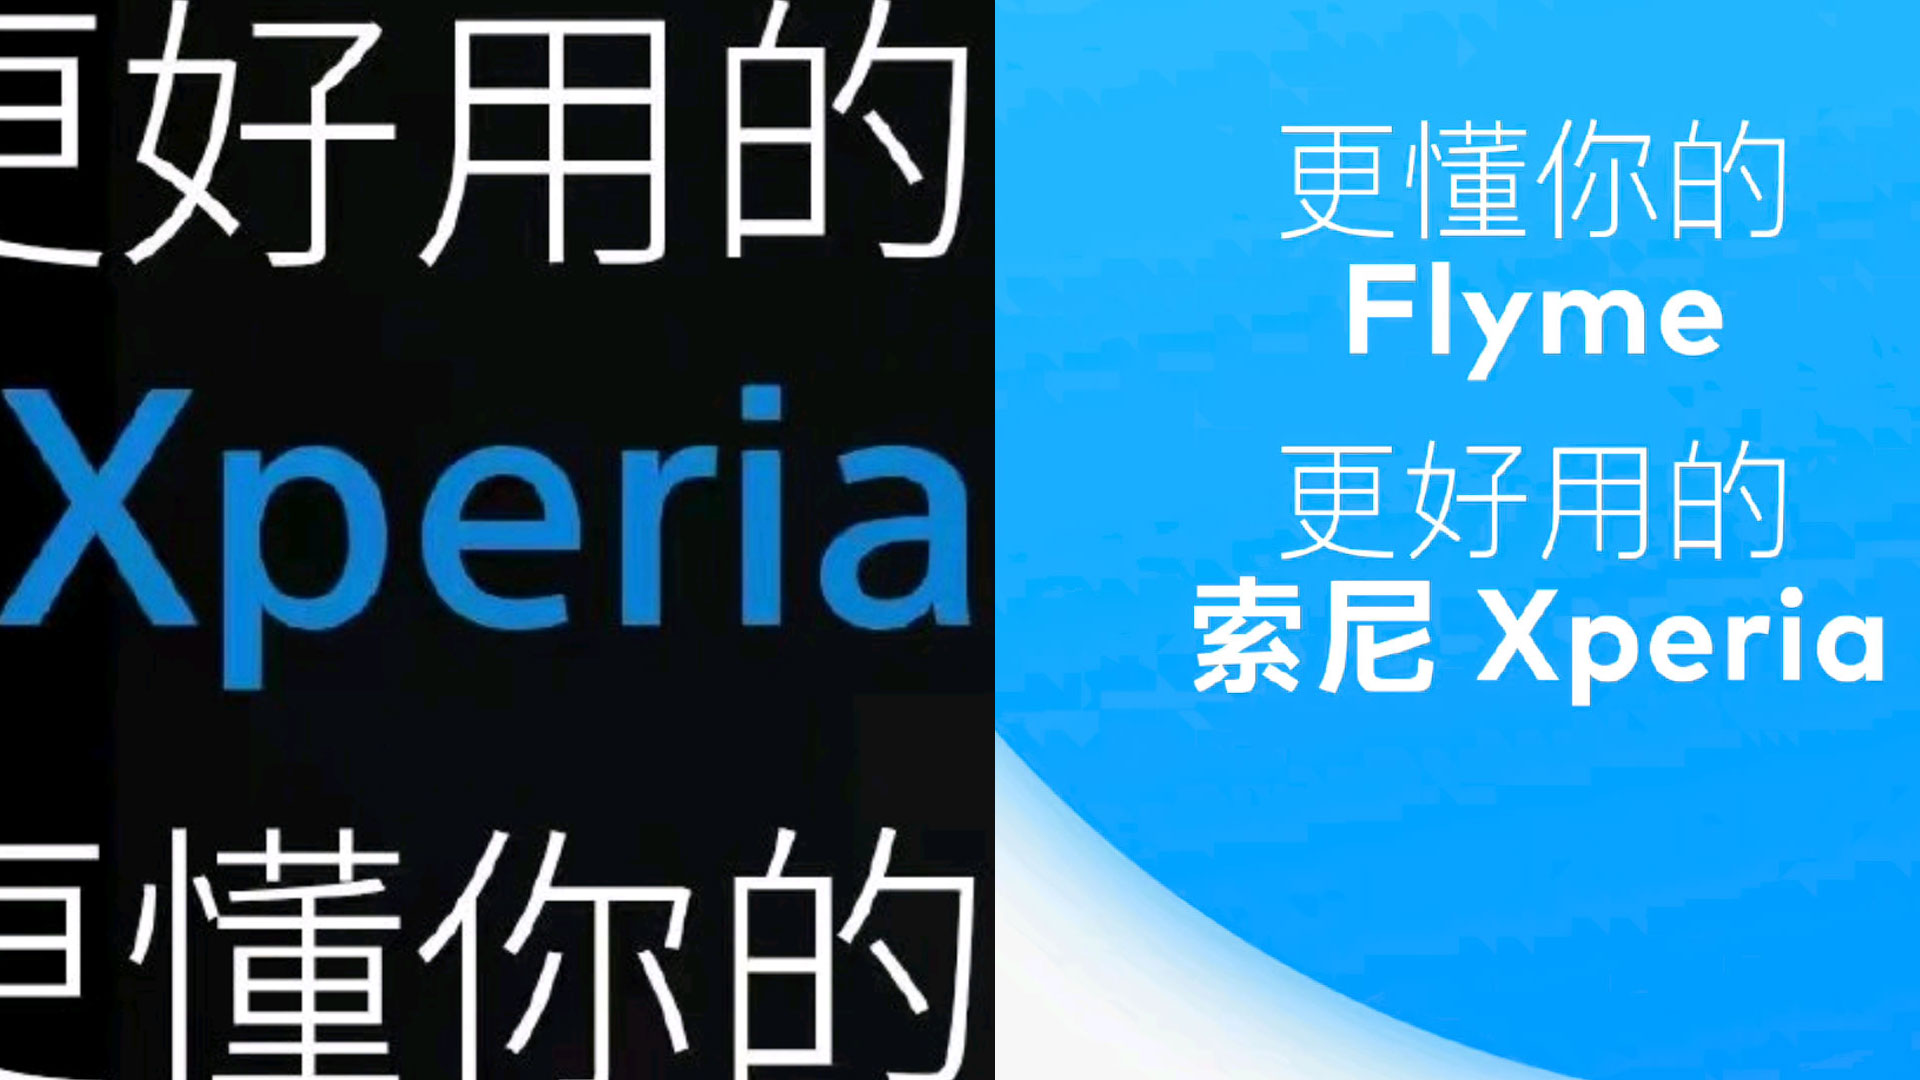 همکاری سونی با Meizu برای استفاده از رابط کاربری Flyme